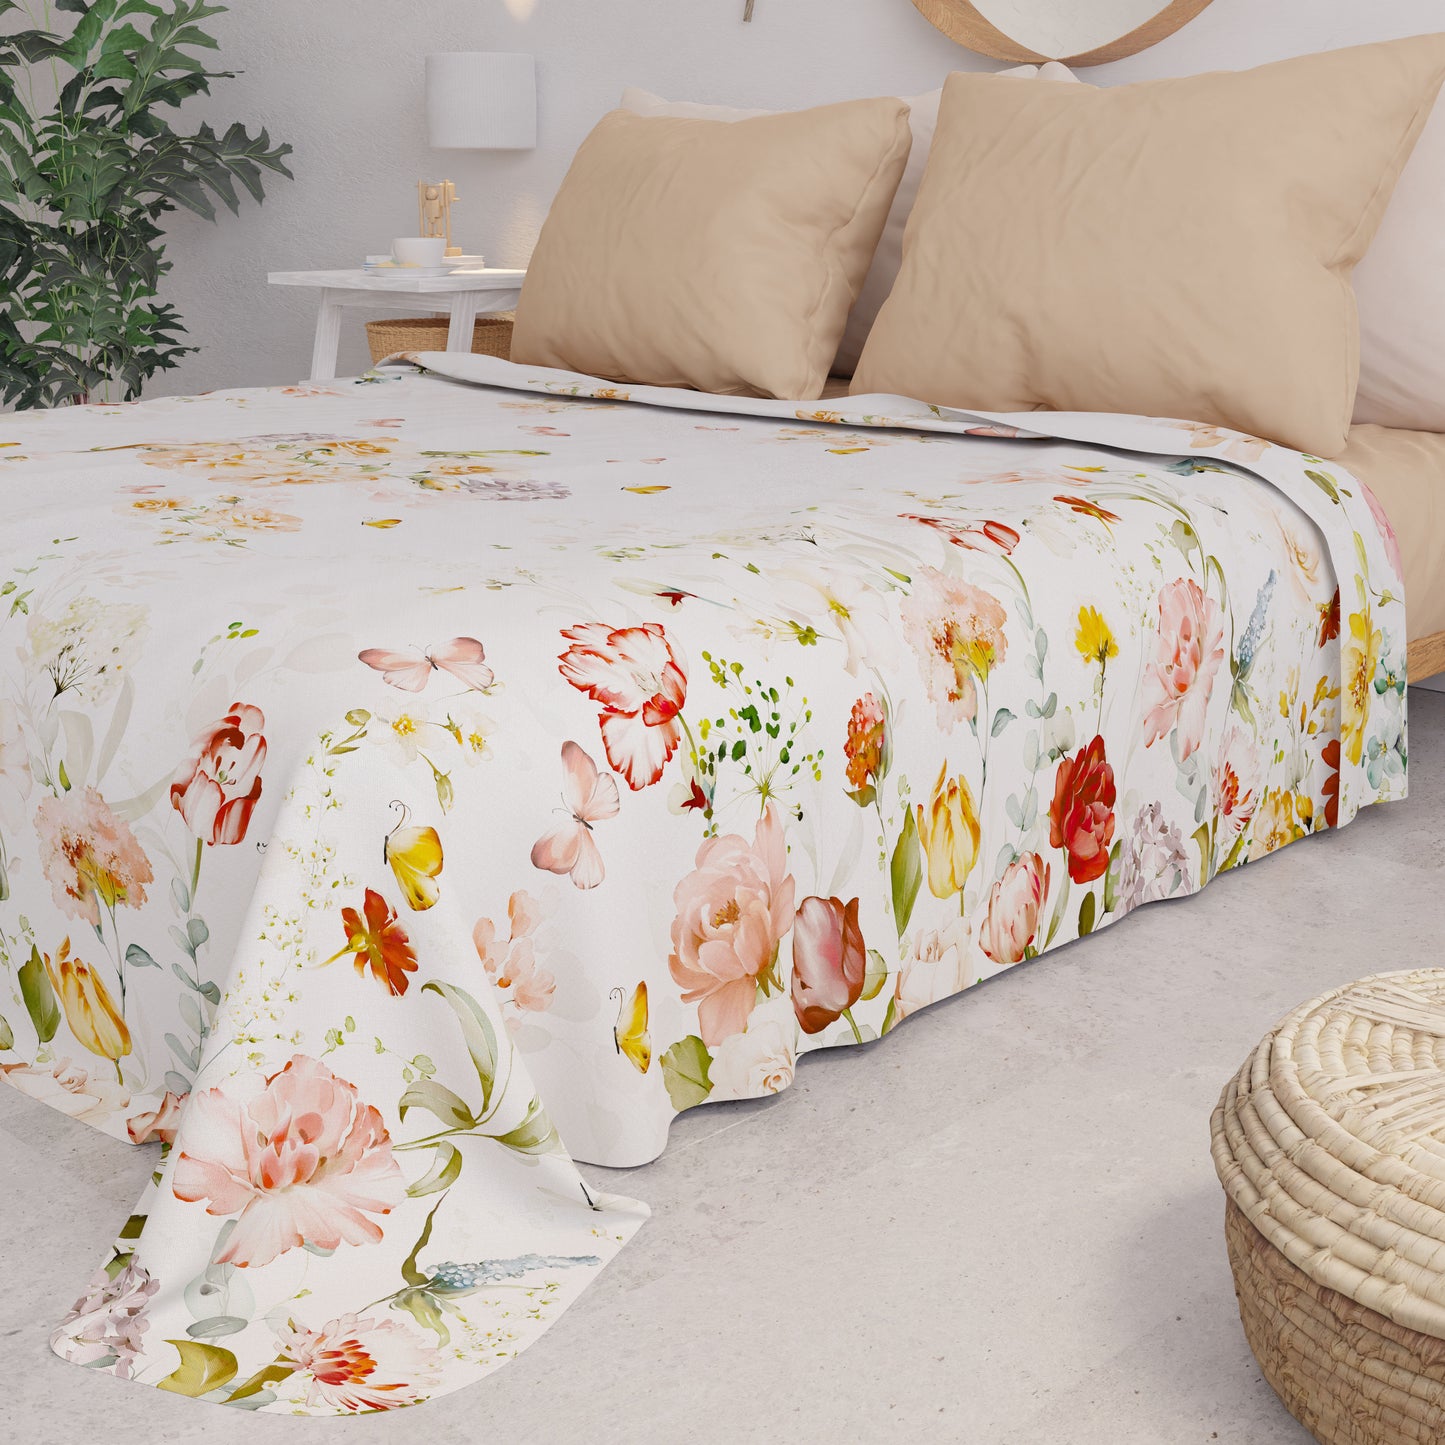 Summer Bedspread, Lightweight Blanket, Sheets Bedspread, Floral Beige